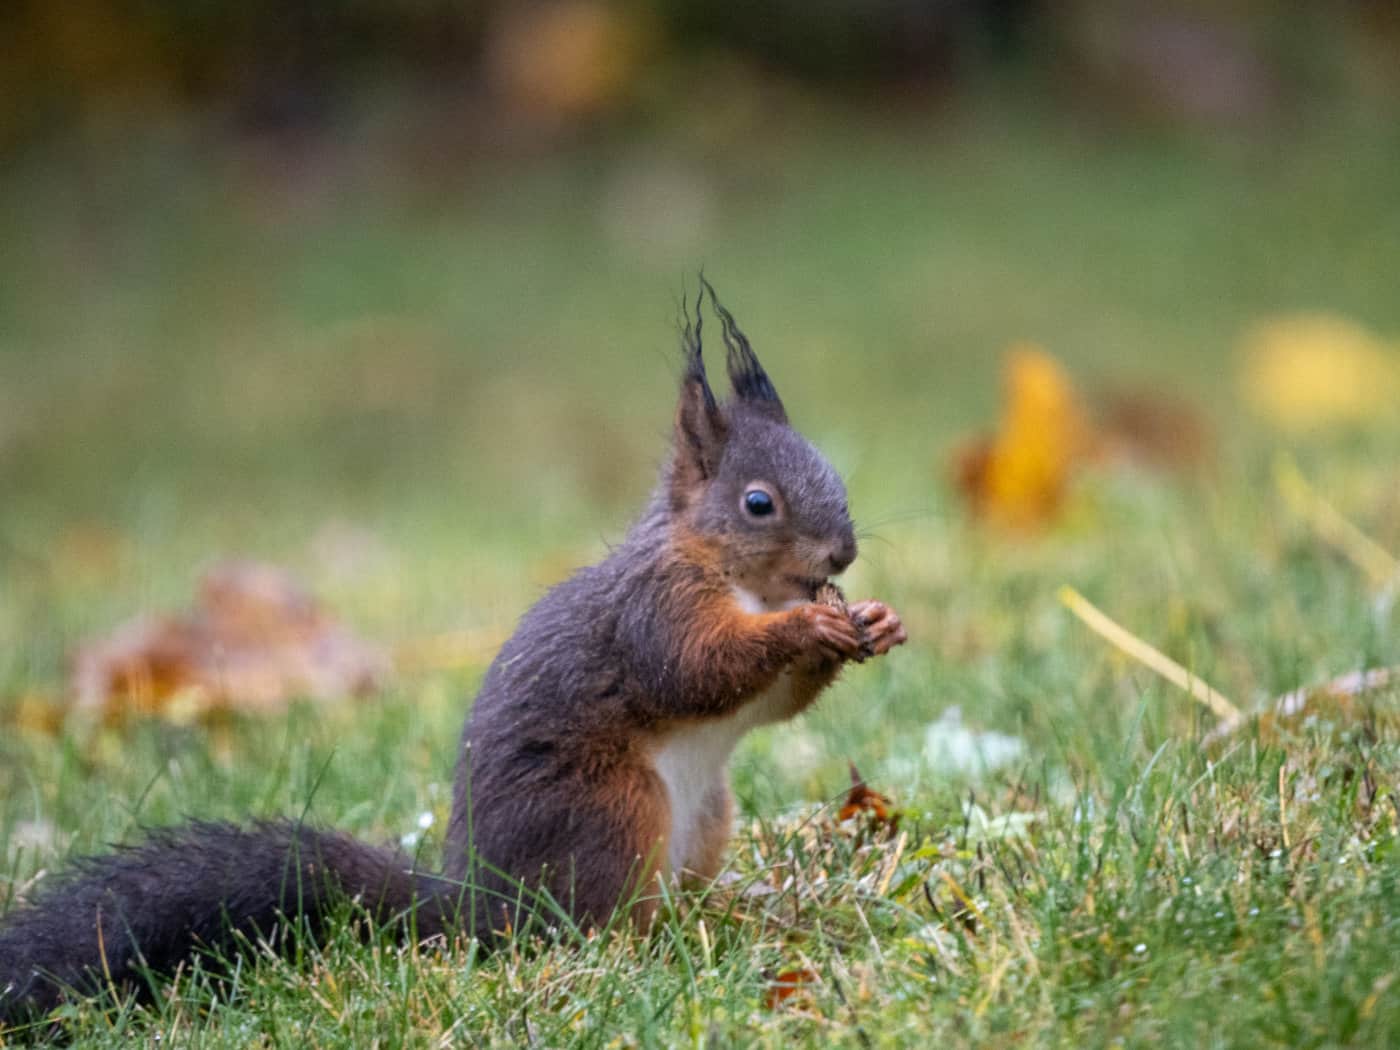 Das Eichhörnchen sitzt aufrecht auf einer Wiese und knabbert an etwas